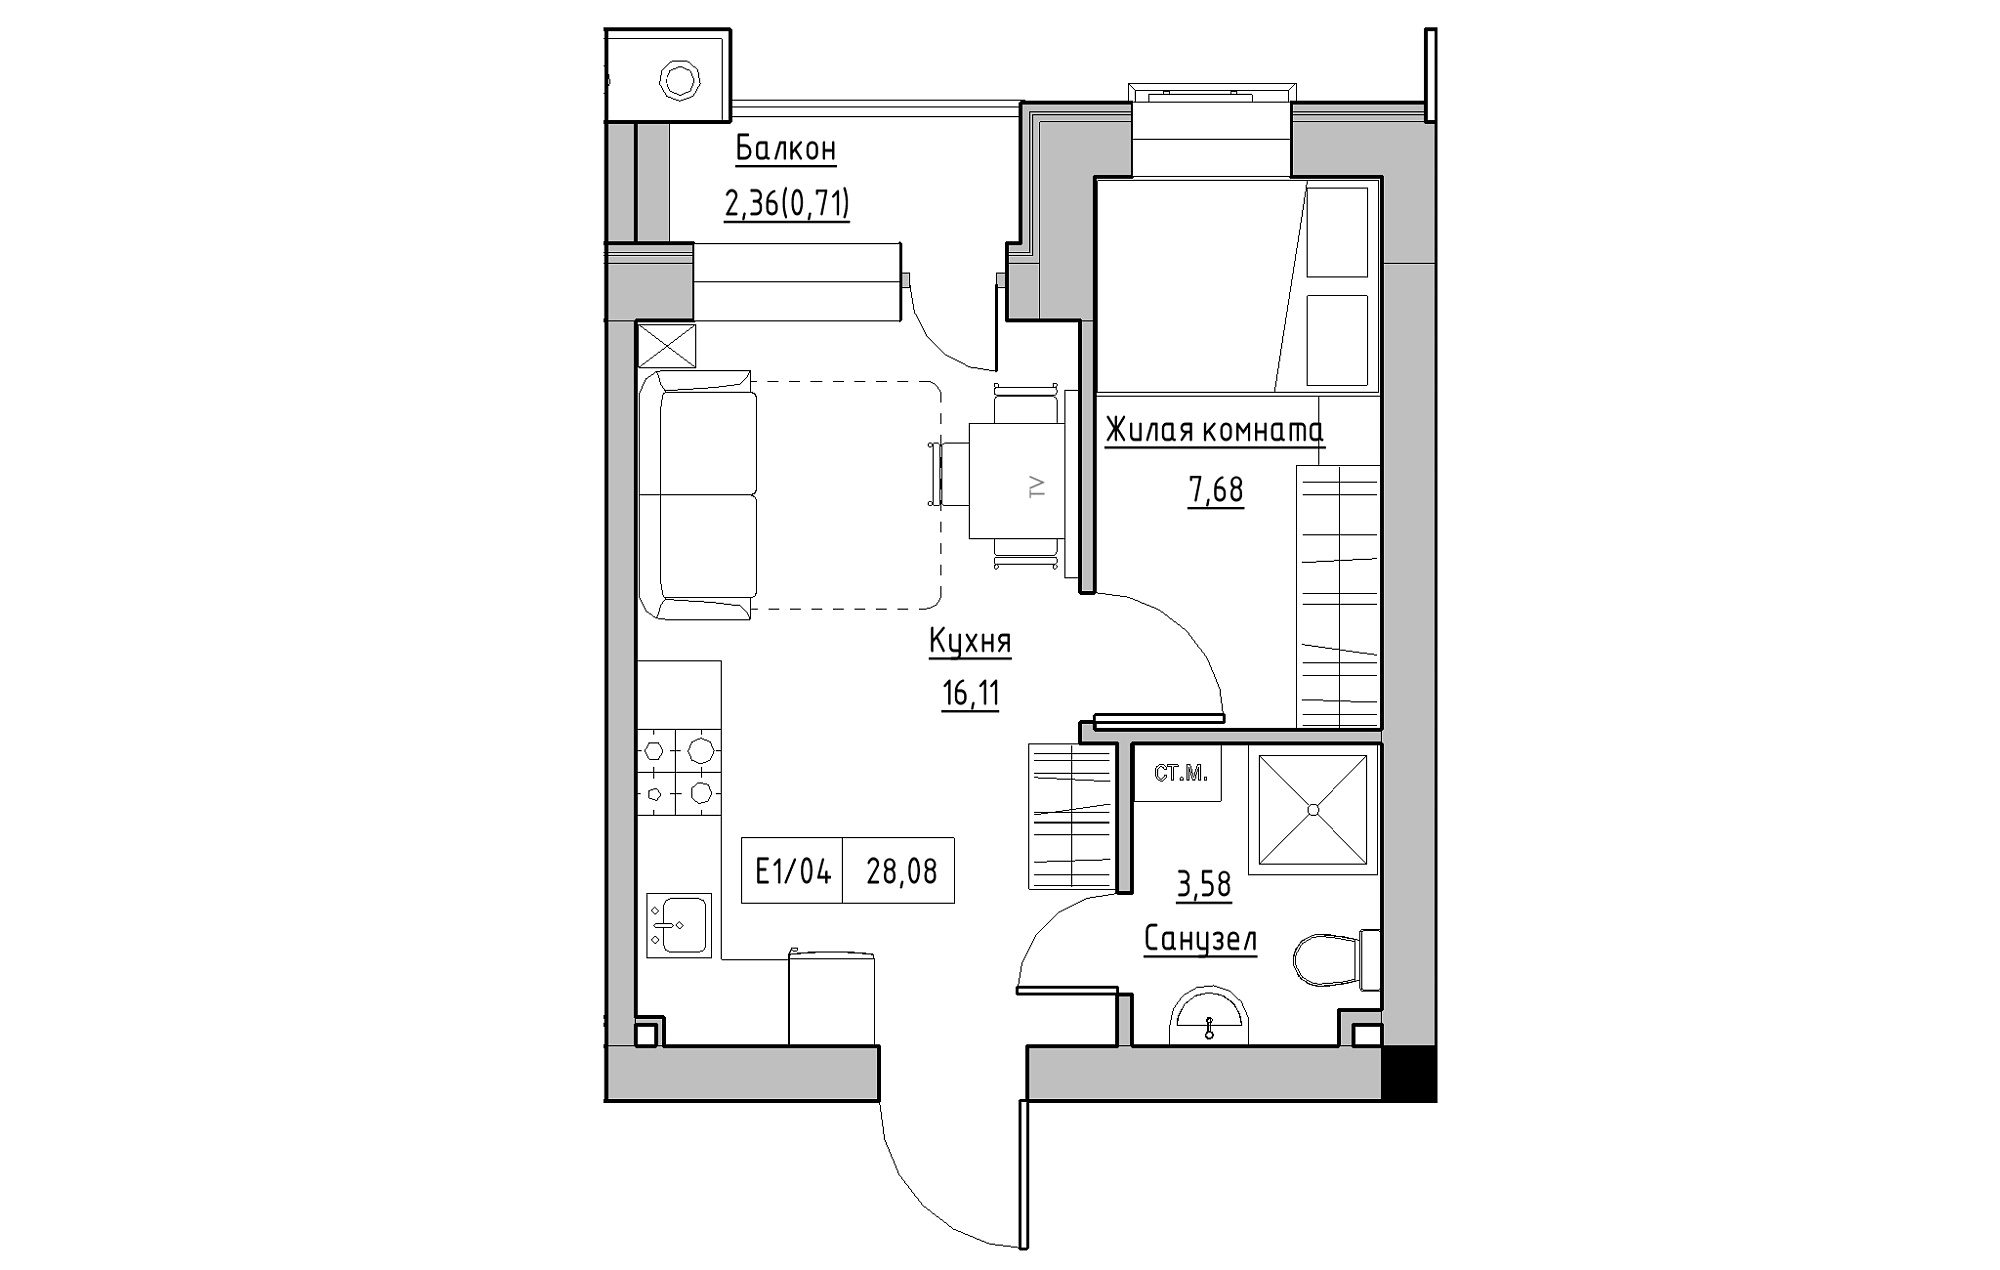 Планировка 1-к квартира площей 28.08м2, KS-013-05/0010.